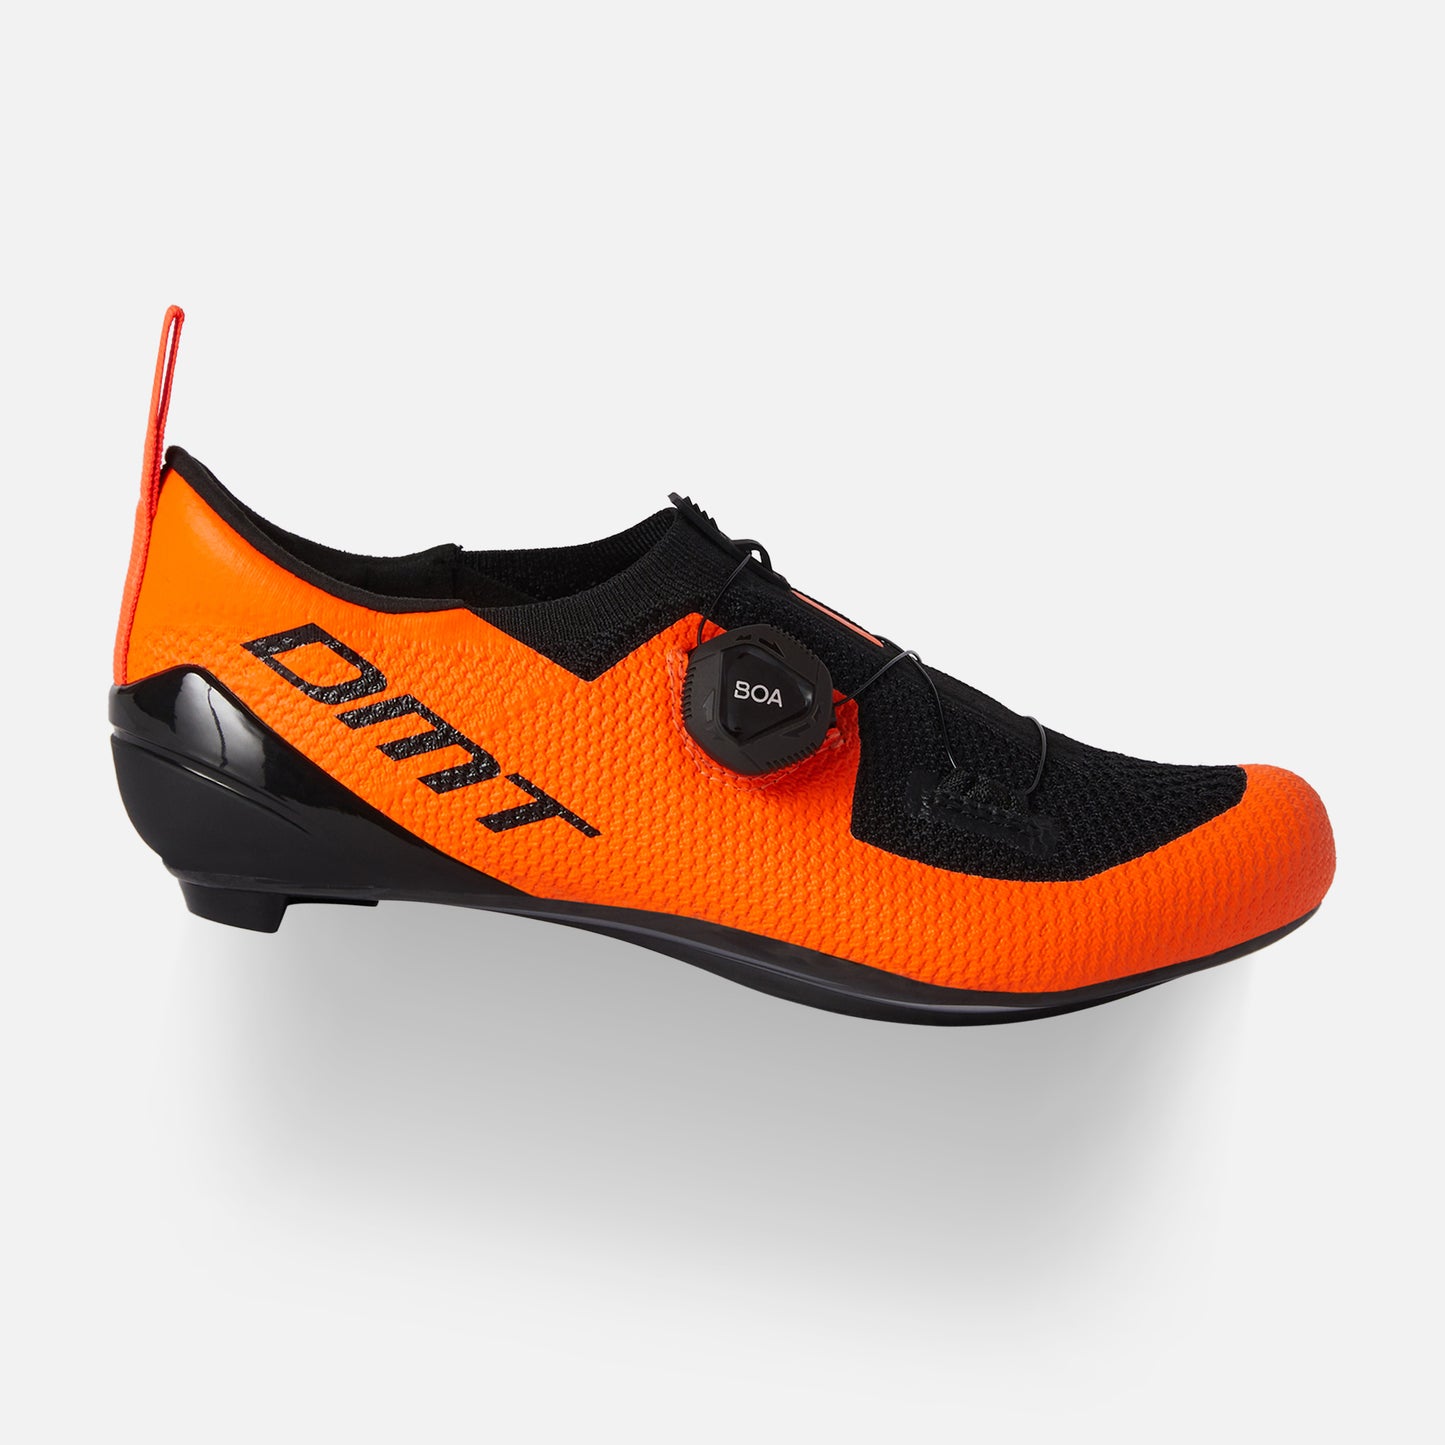 DMT Kt1 bike shoes Orange/Black - DMT Cycling